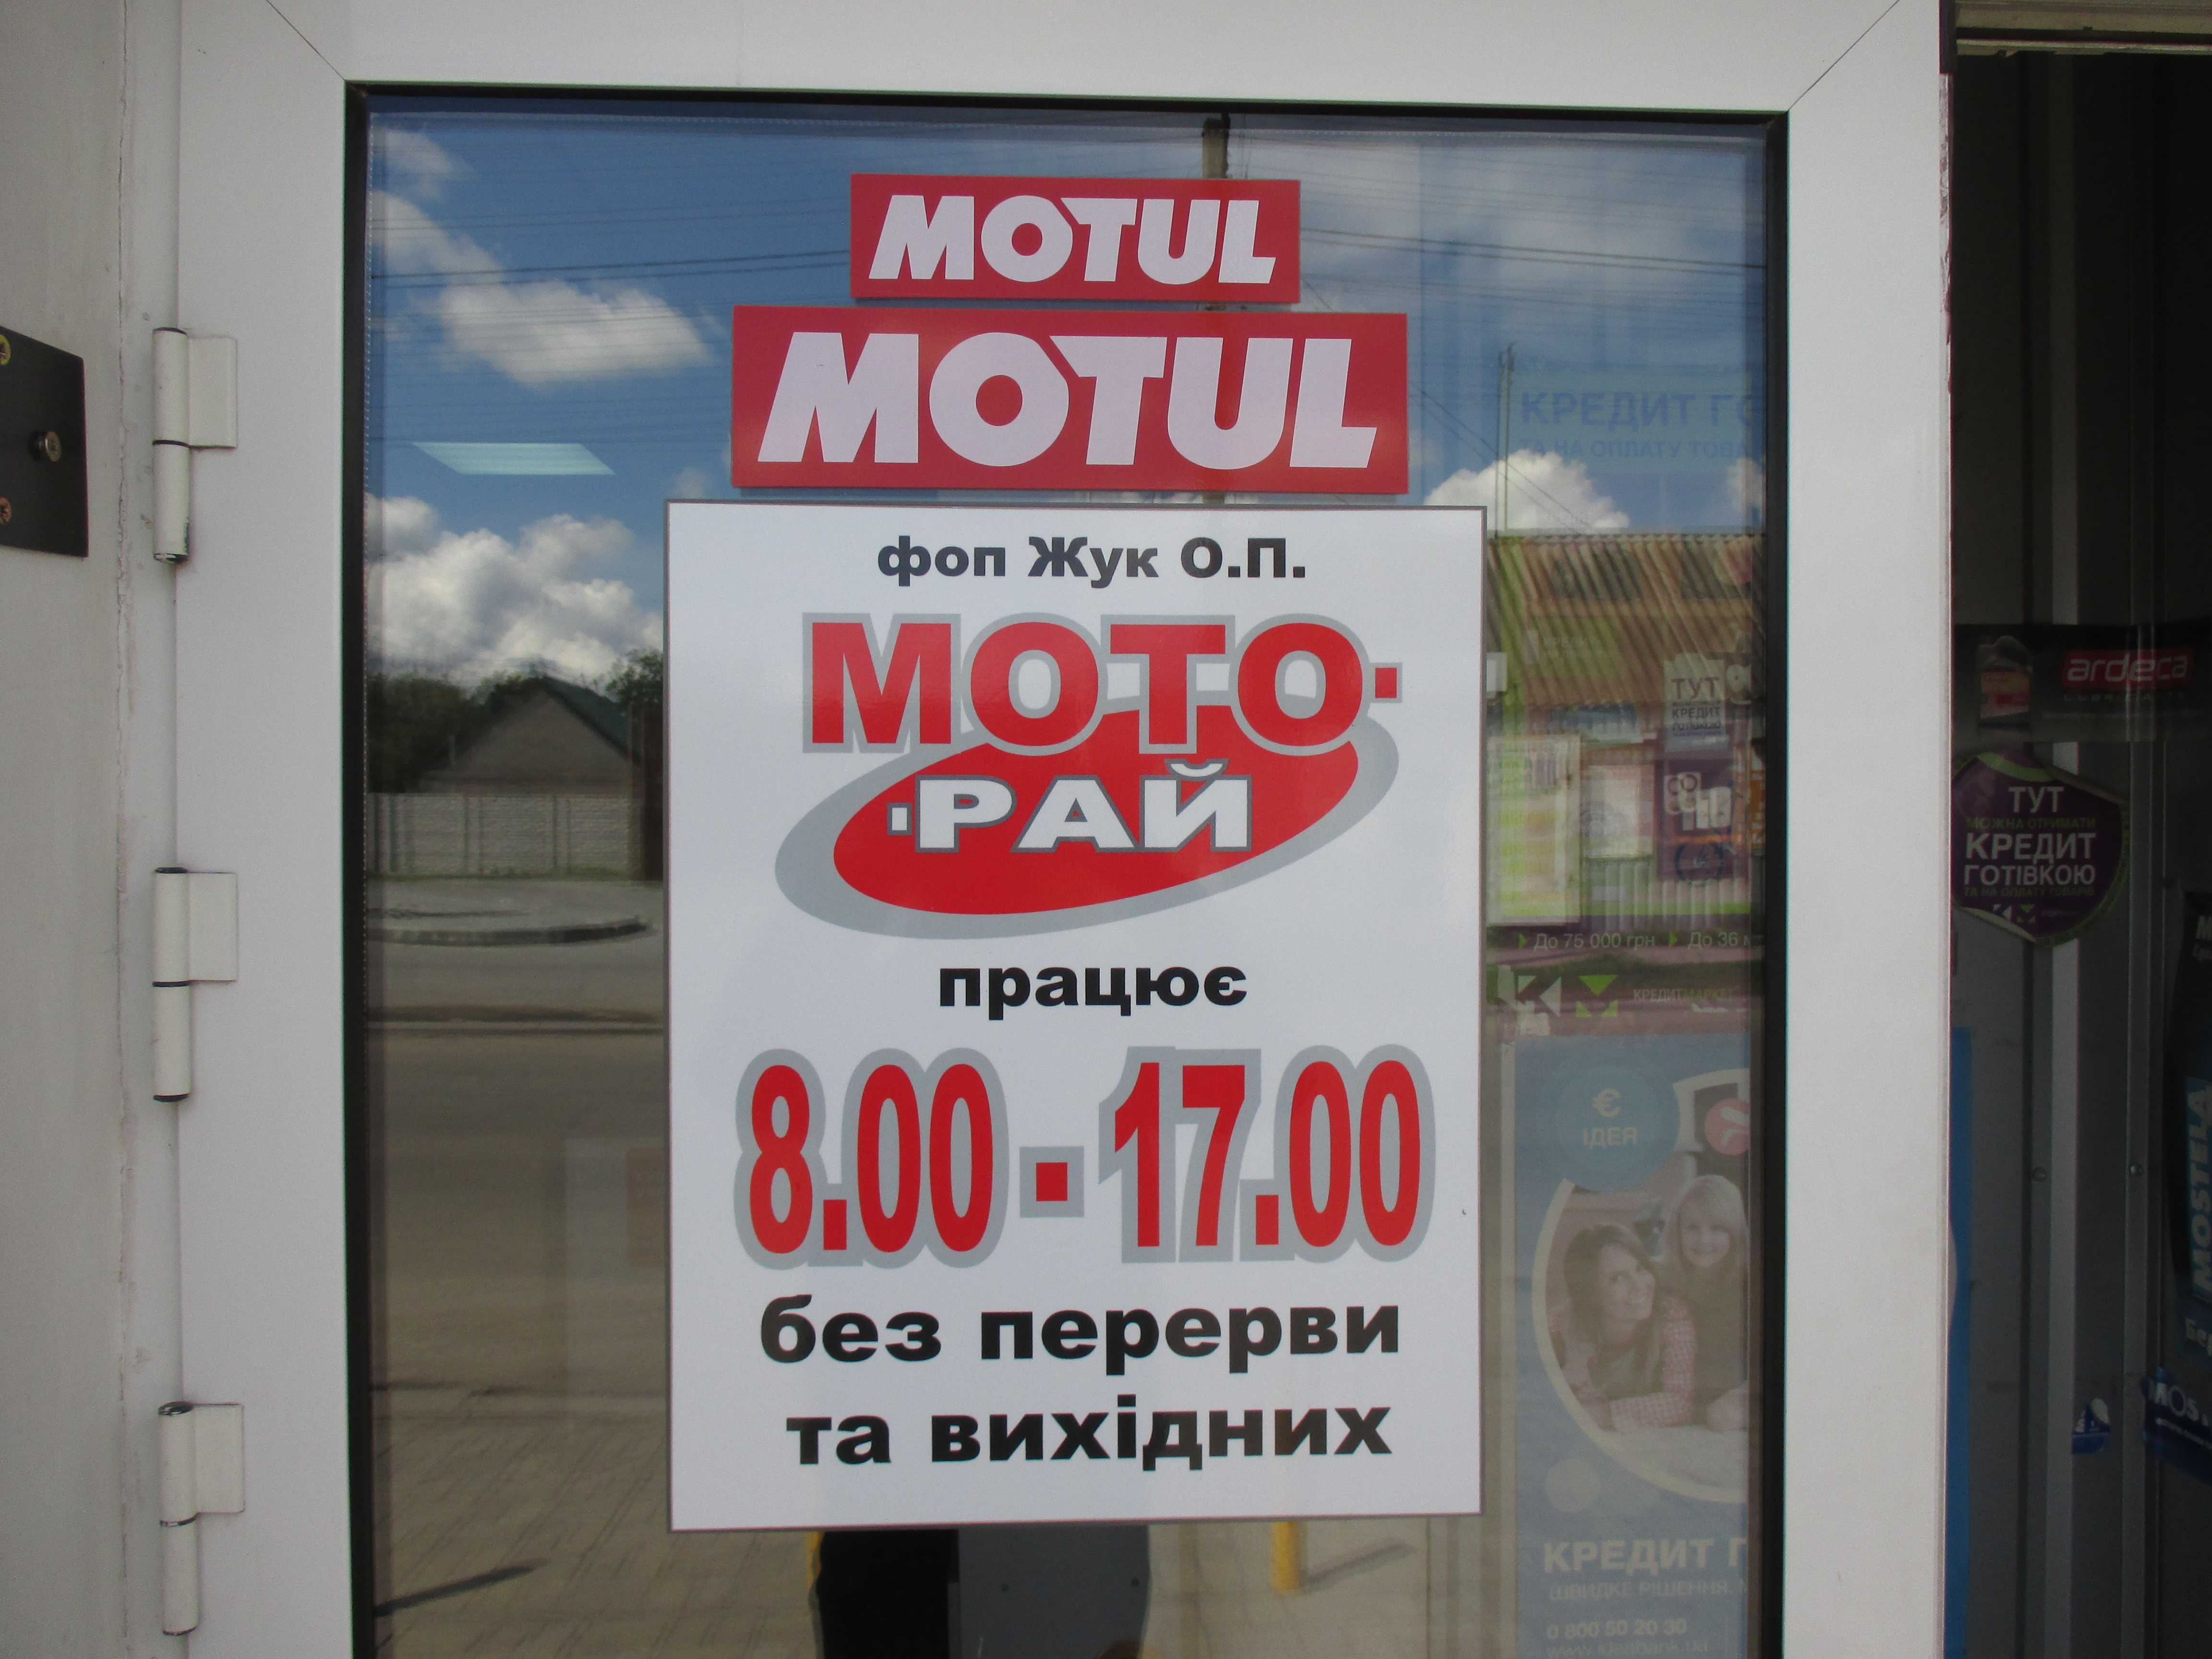 Продаж нової мототехніки SPARK м-н"МОТО-РАЙ", м.Синельникове.